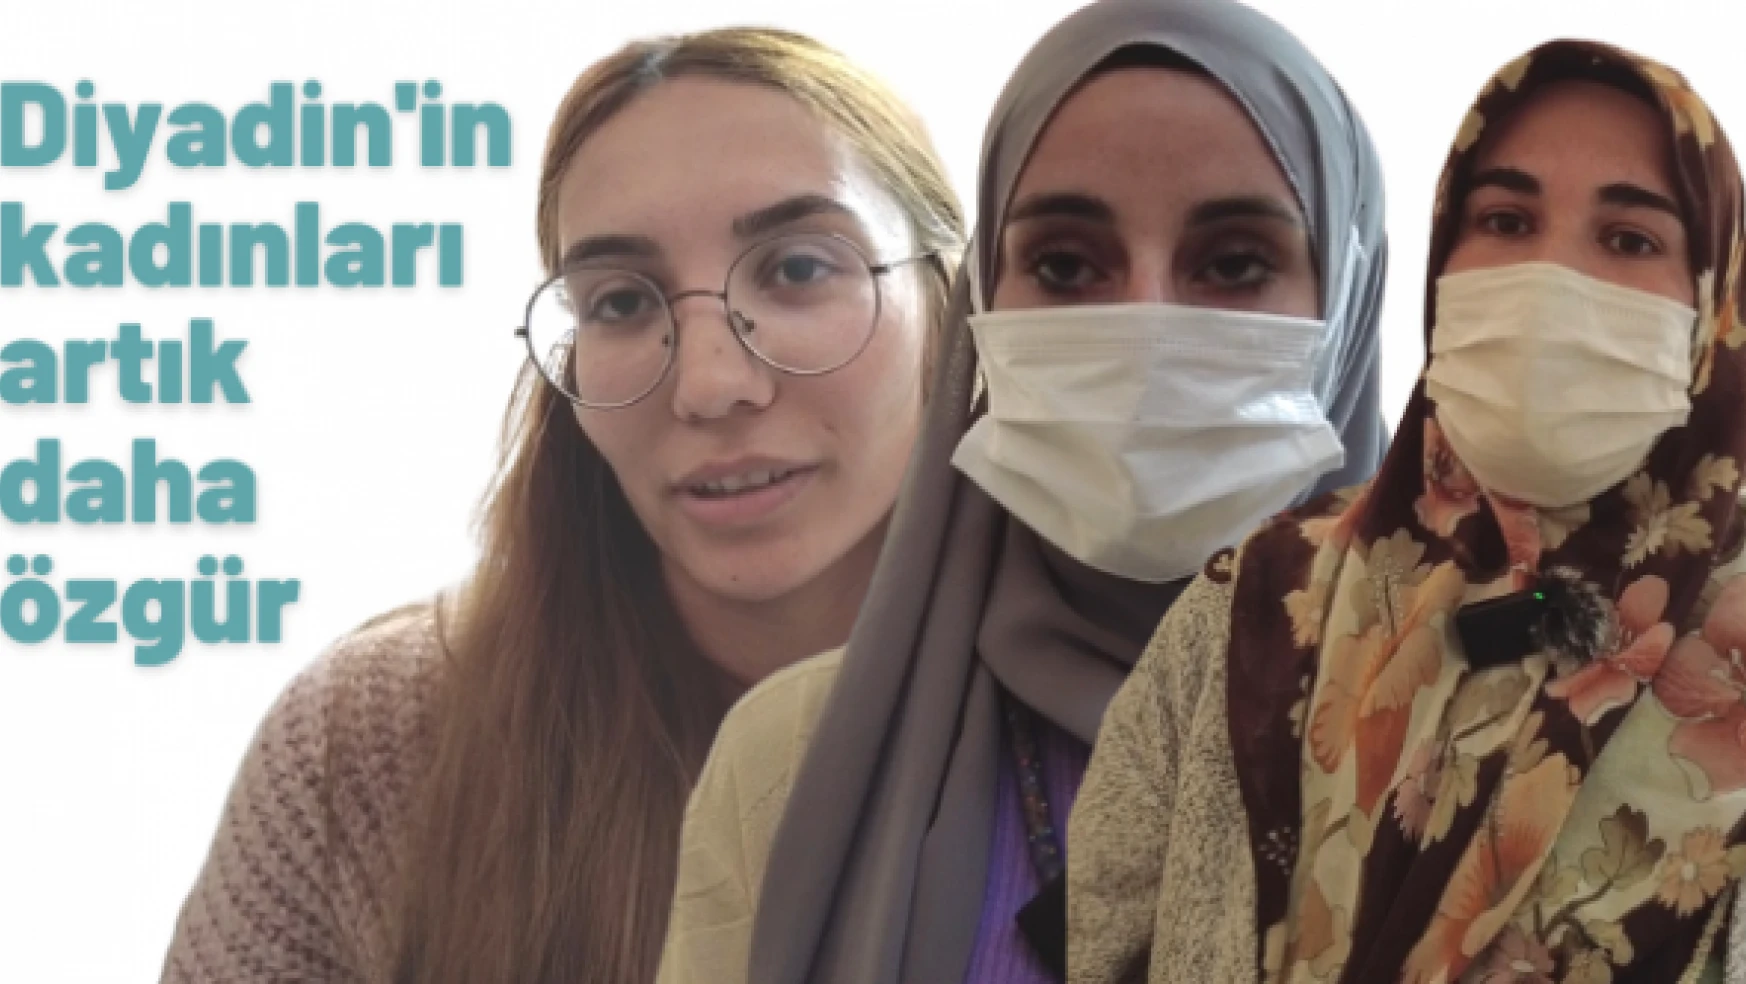 Diyadin'de kadınlar harıl harıl çalışıyor artık daha özgürler